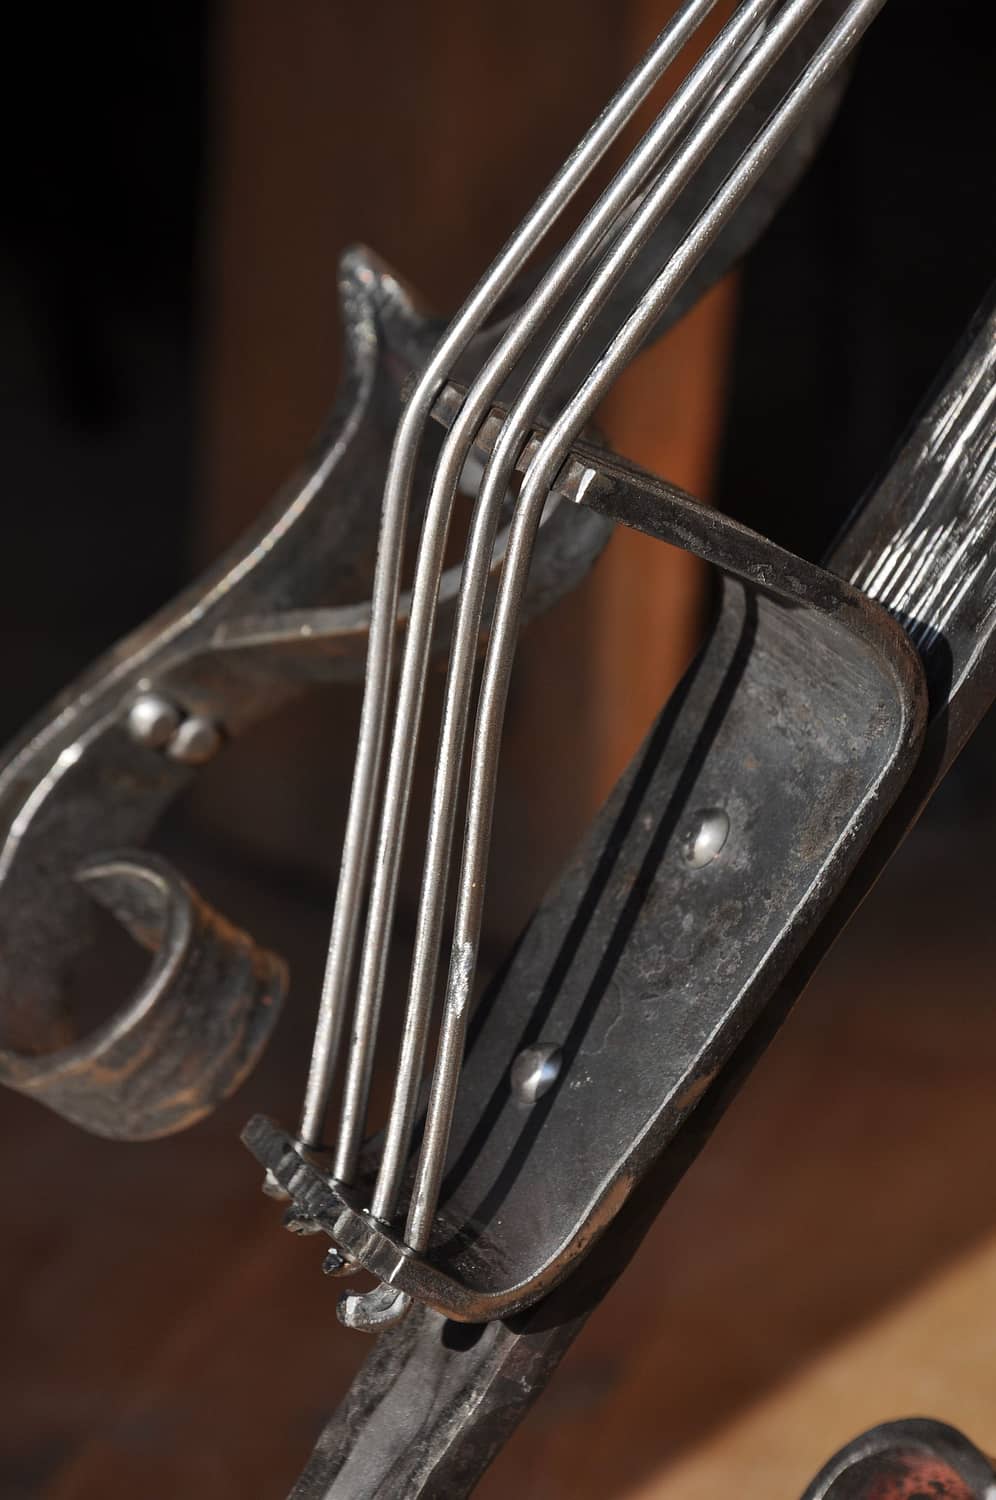 instrument kuty metaloplastyka wykonany na konkurs kowalski w ropczycach